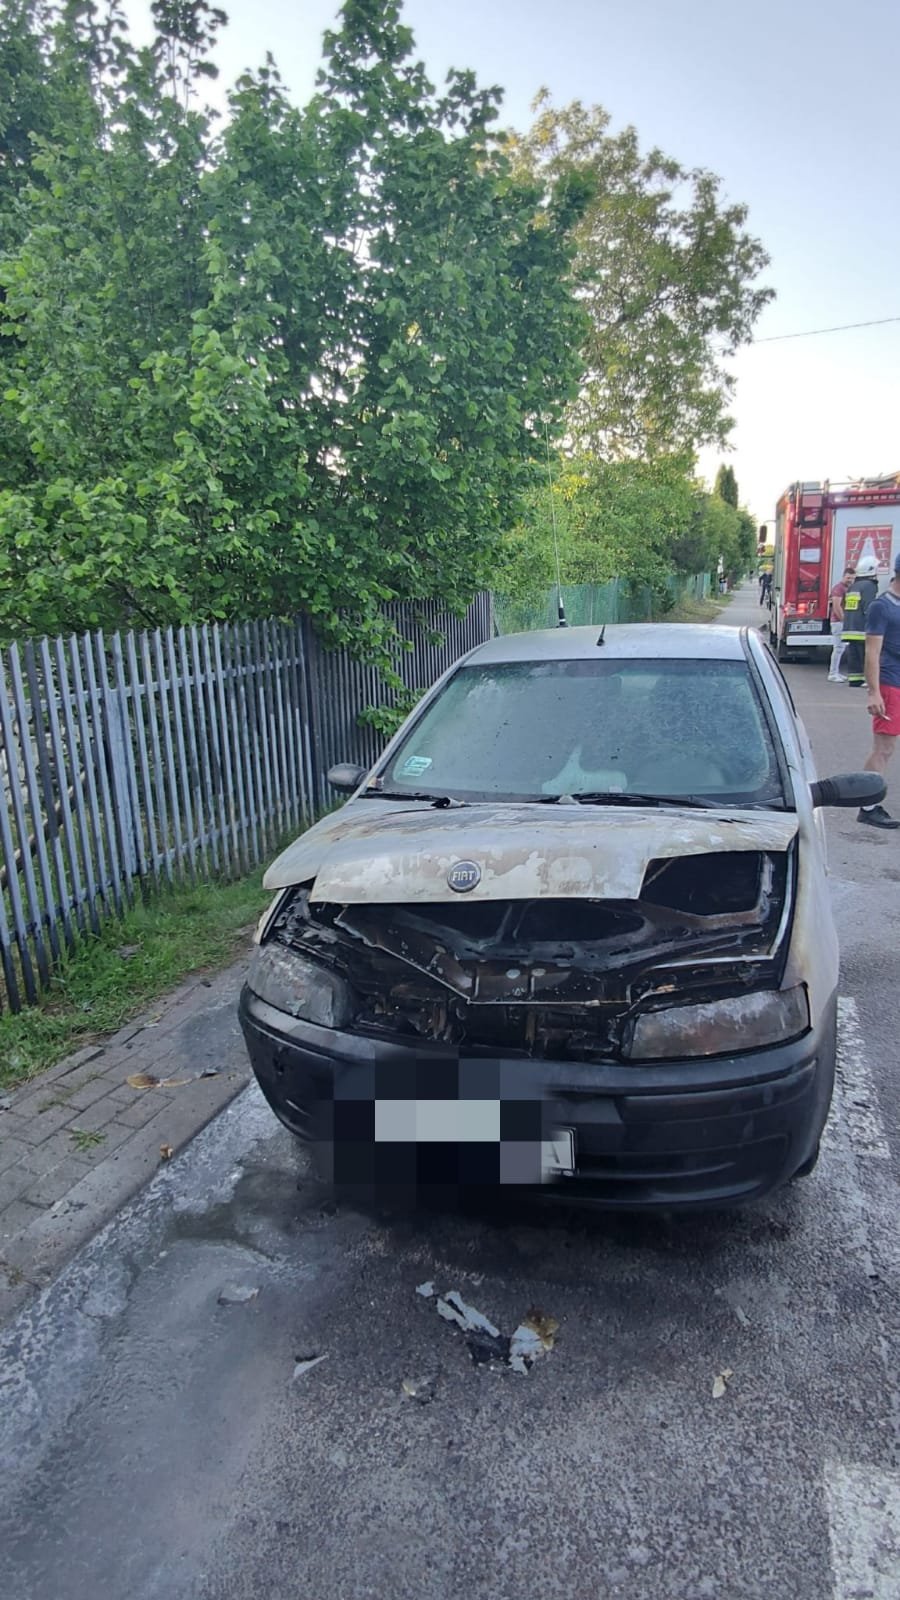 W fiacie doszło do zwarcia instalacji elektrycznej, pojazd częściowo spłonął (zdjęcia)